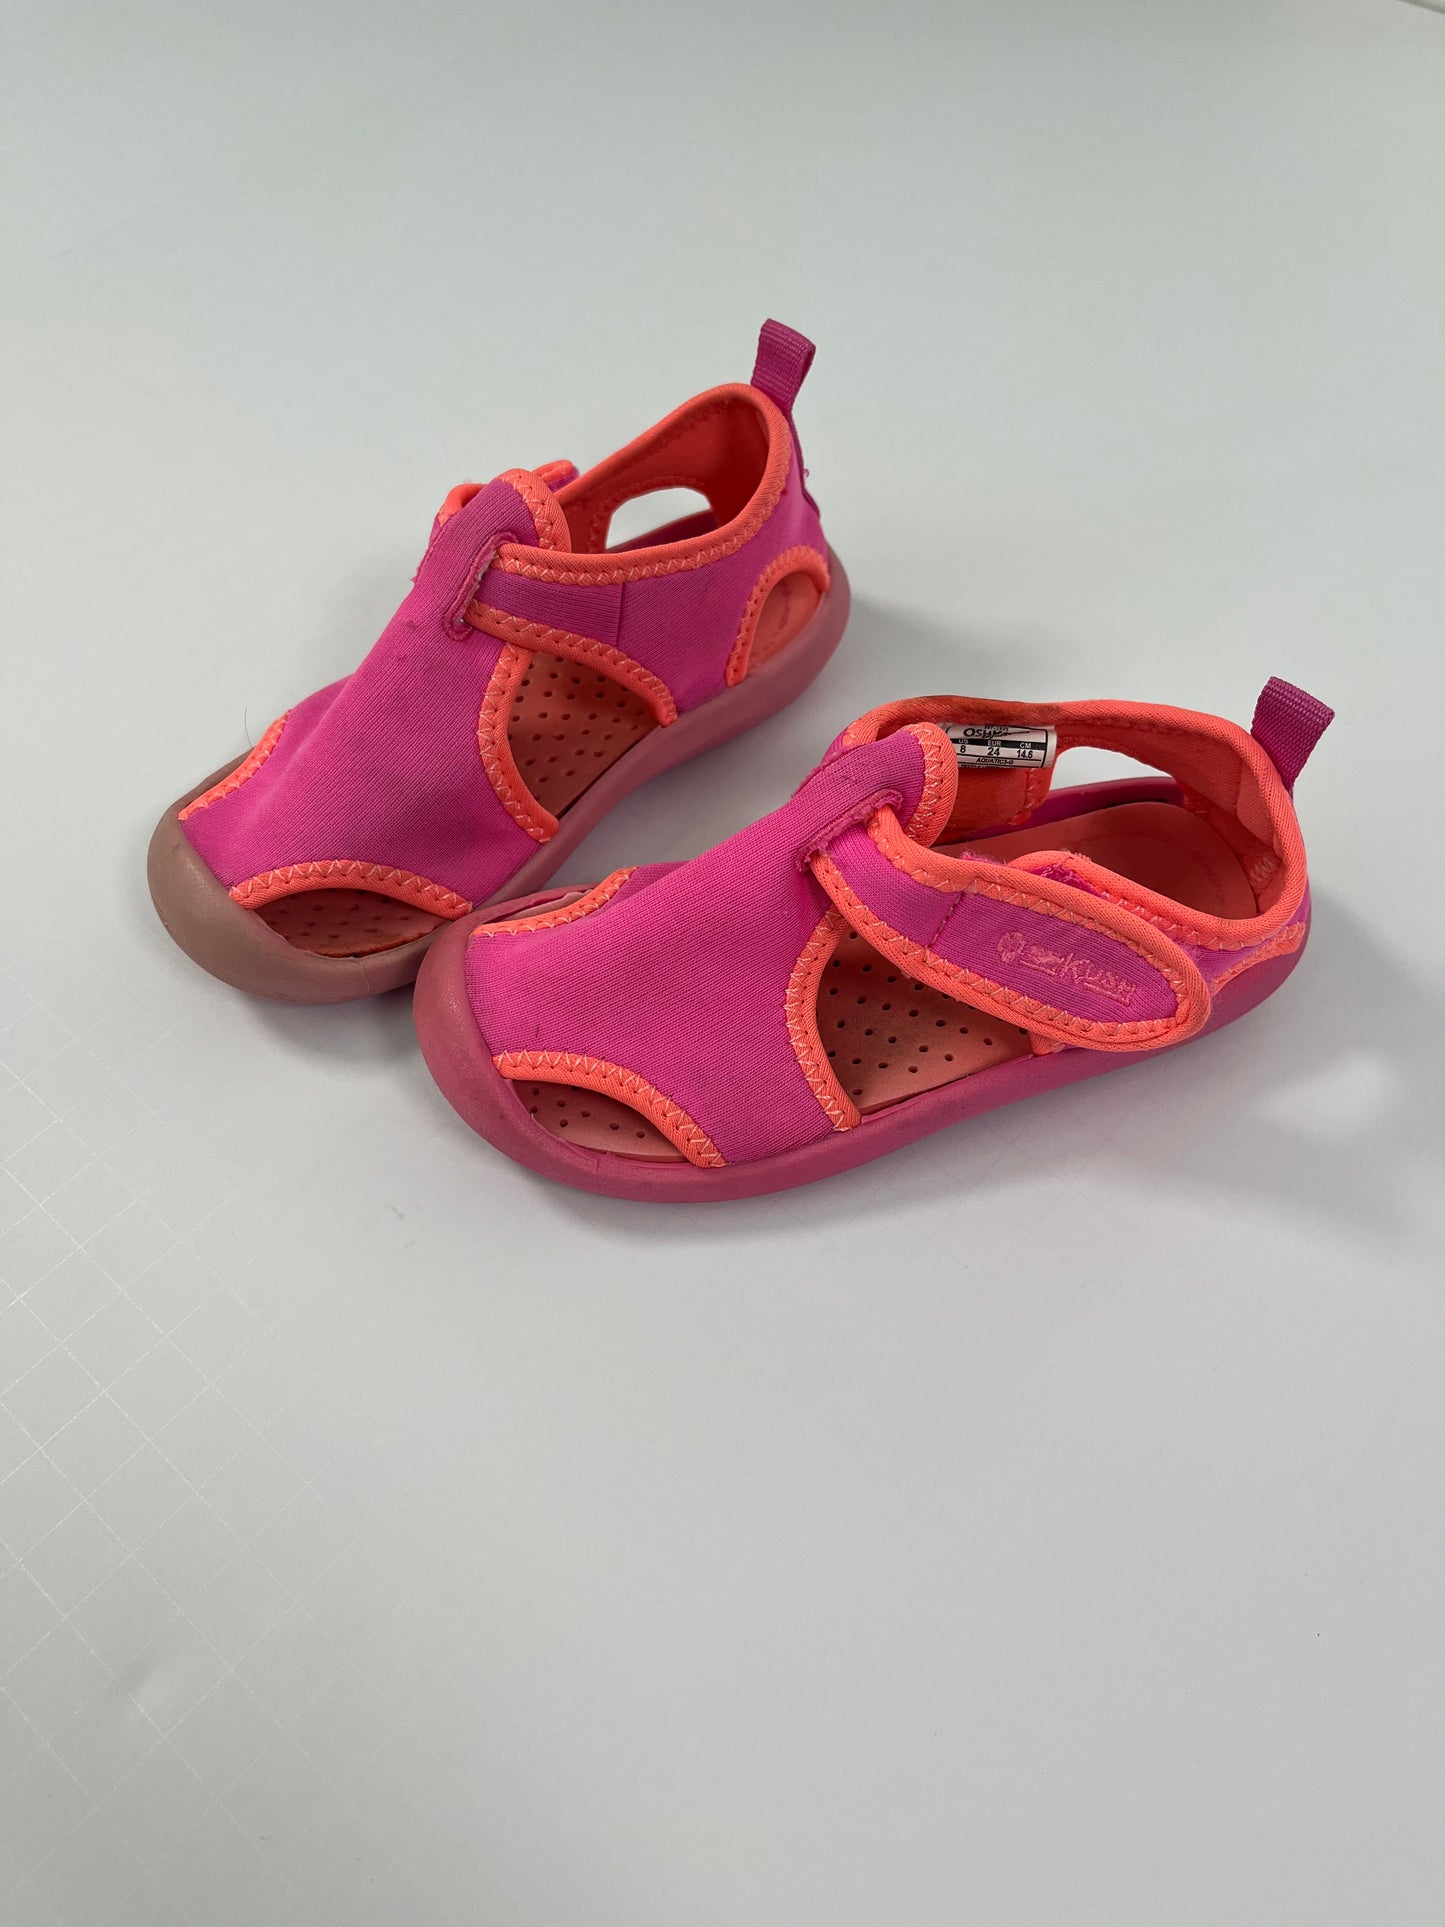 PPU 45242 Osh Kosh size 8 pink water shoes 